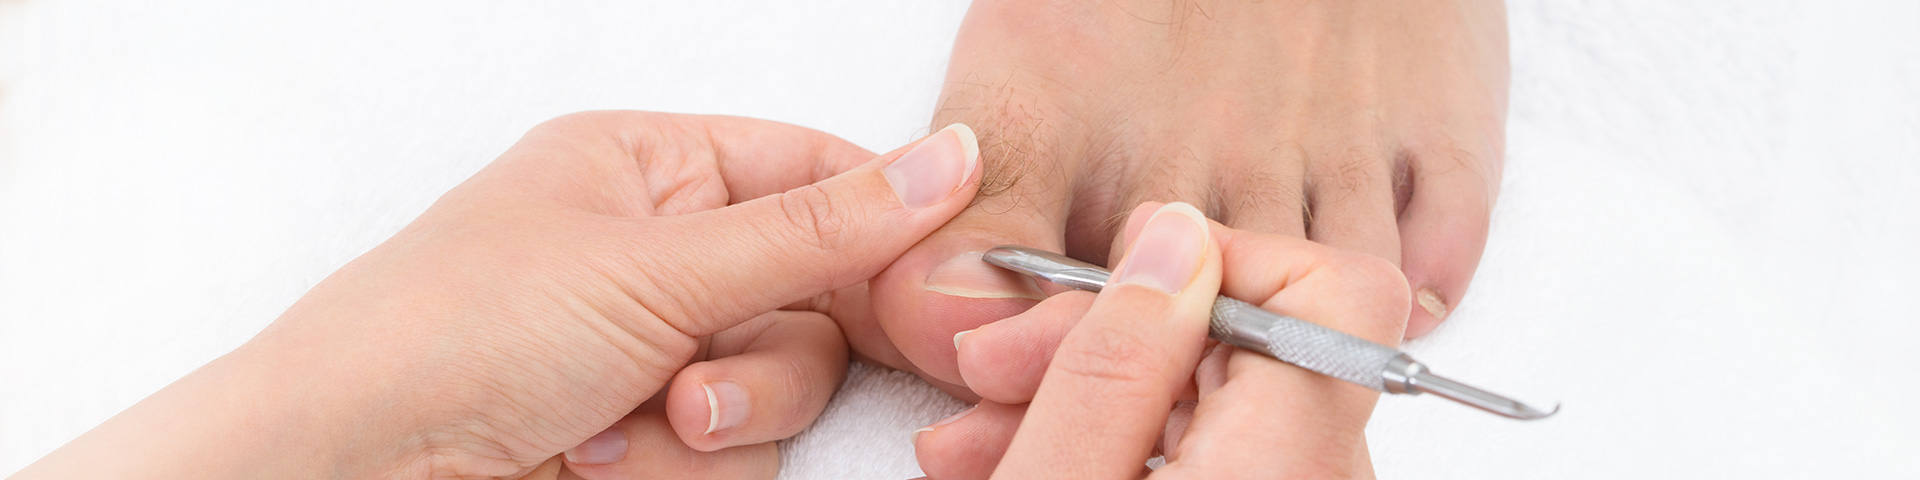 Fußpflege für Männer. Frauenhand mit Instrument entfernt an einem Männerfuß überschüssige Haut